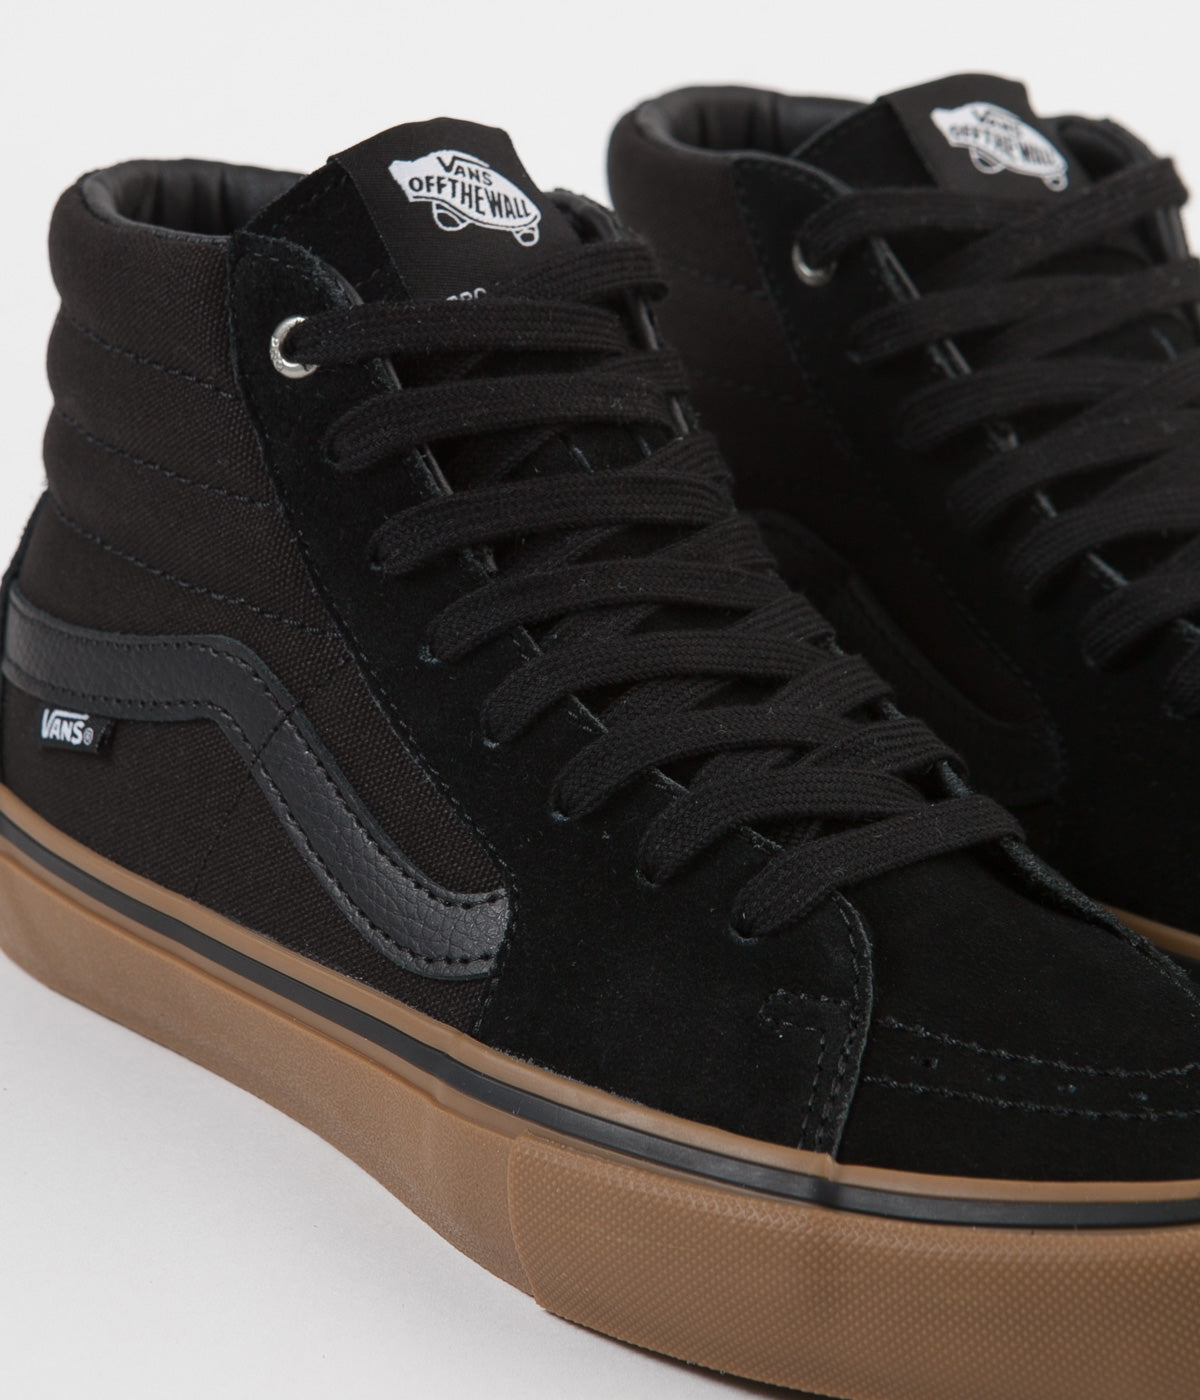 vans sk8-hi pro skate shoes - black/gum